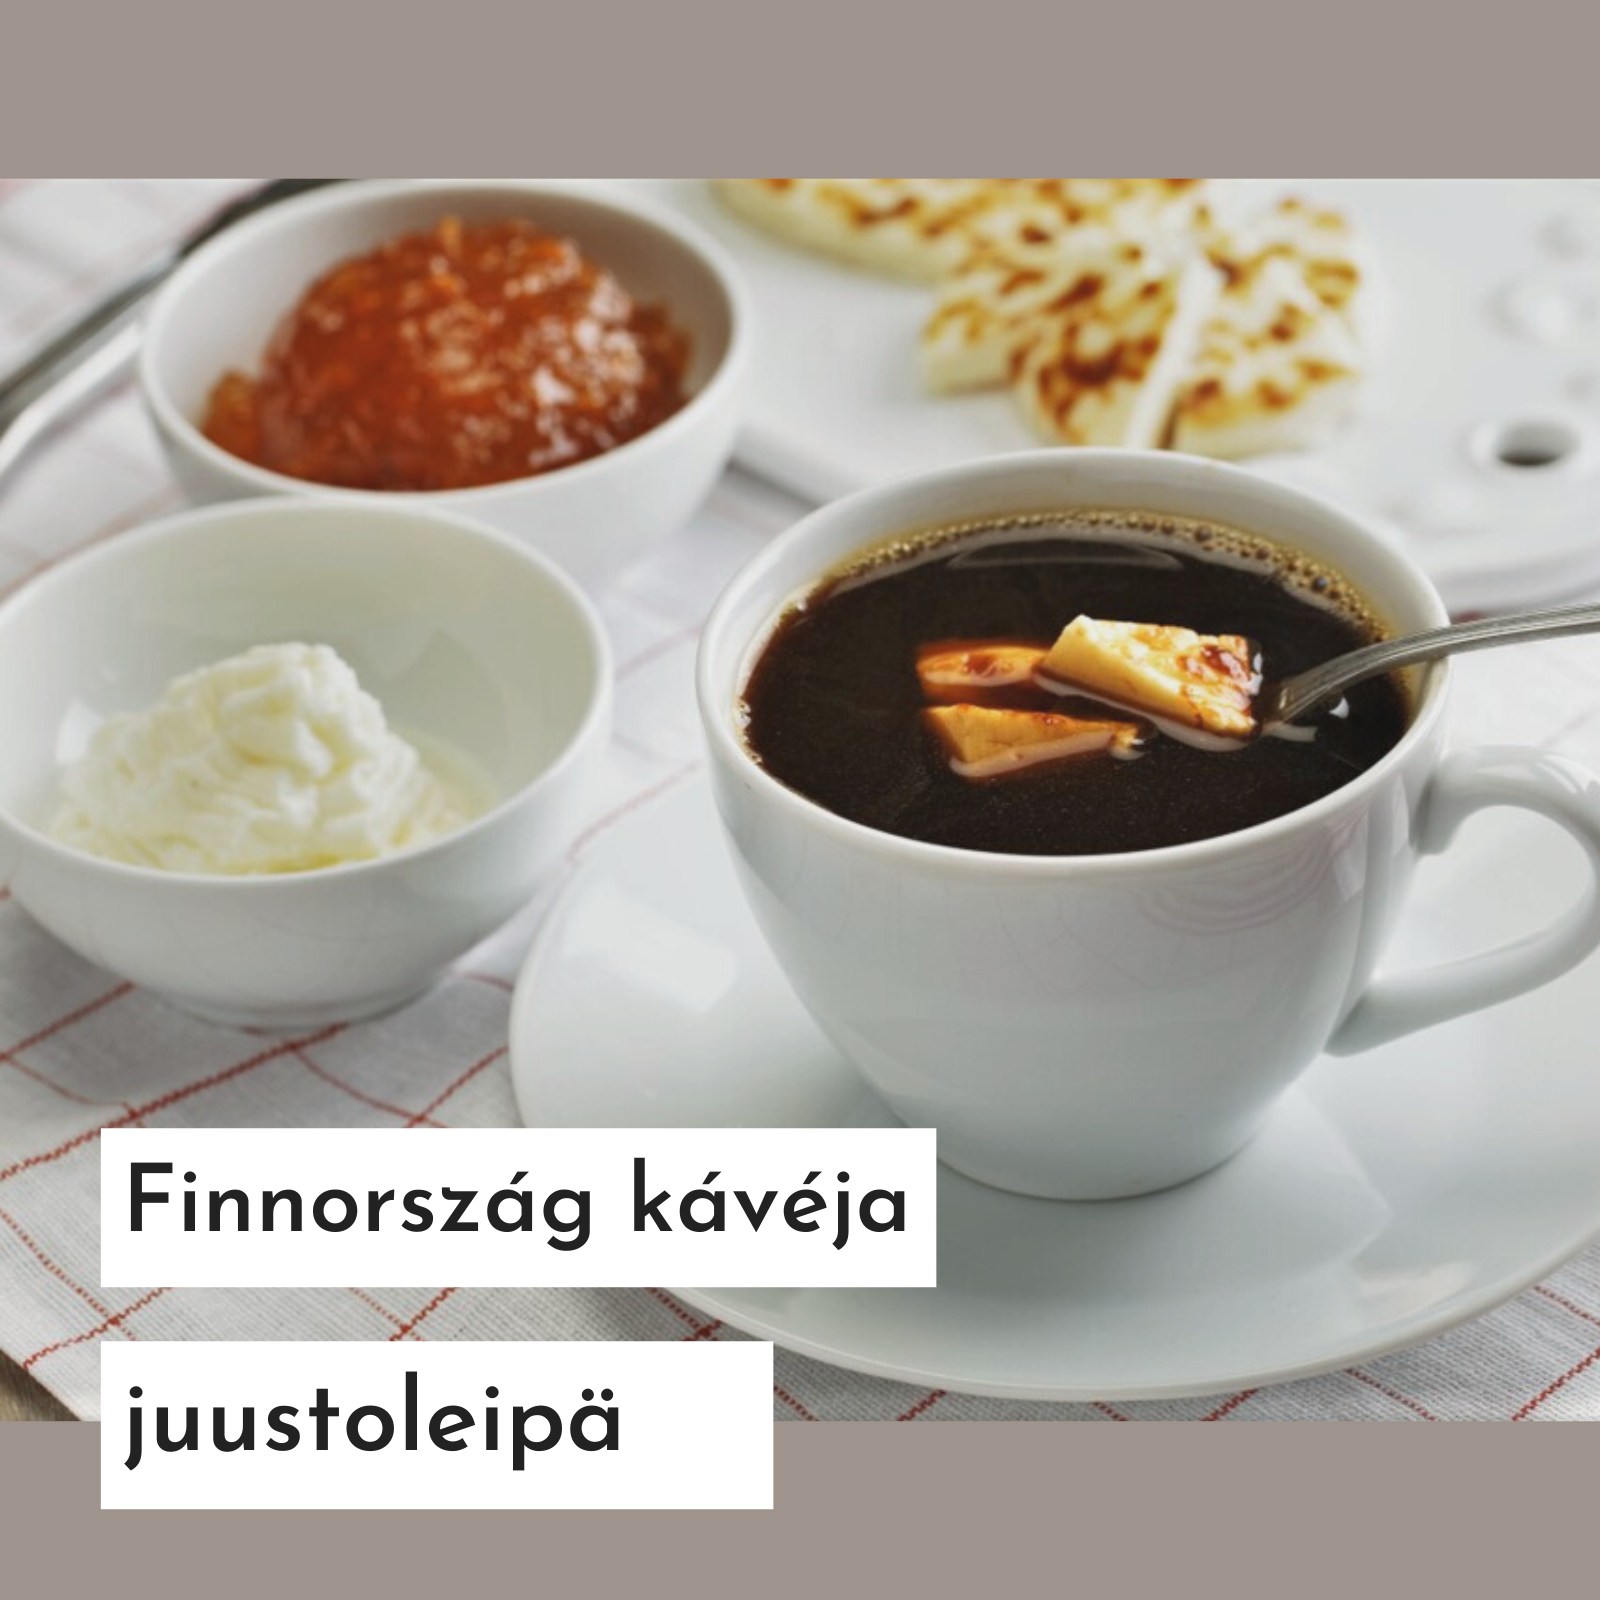 Más ország, más kávéfogyasztási szokások - Finnország